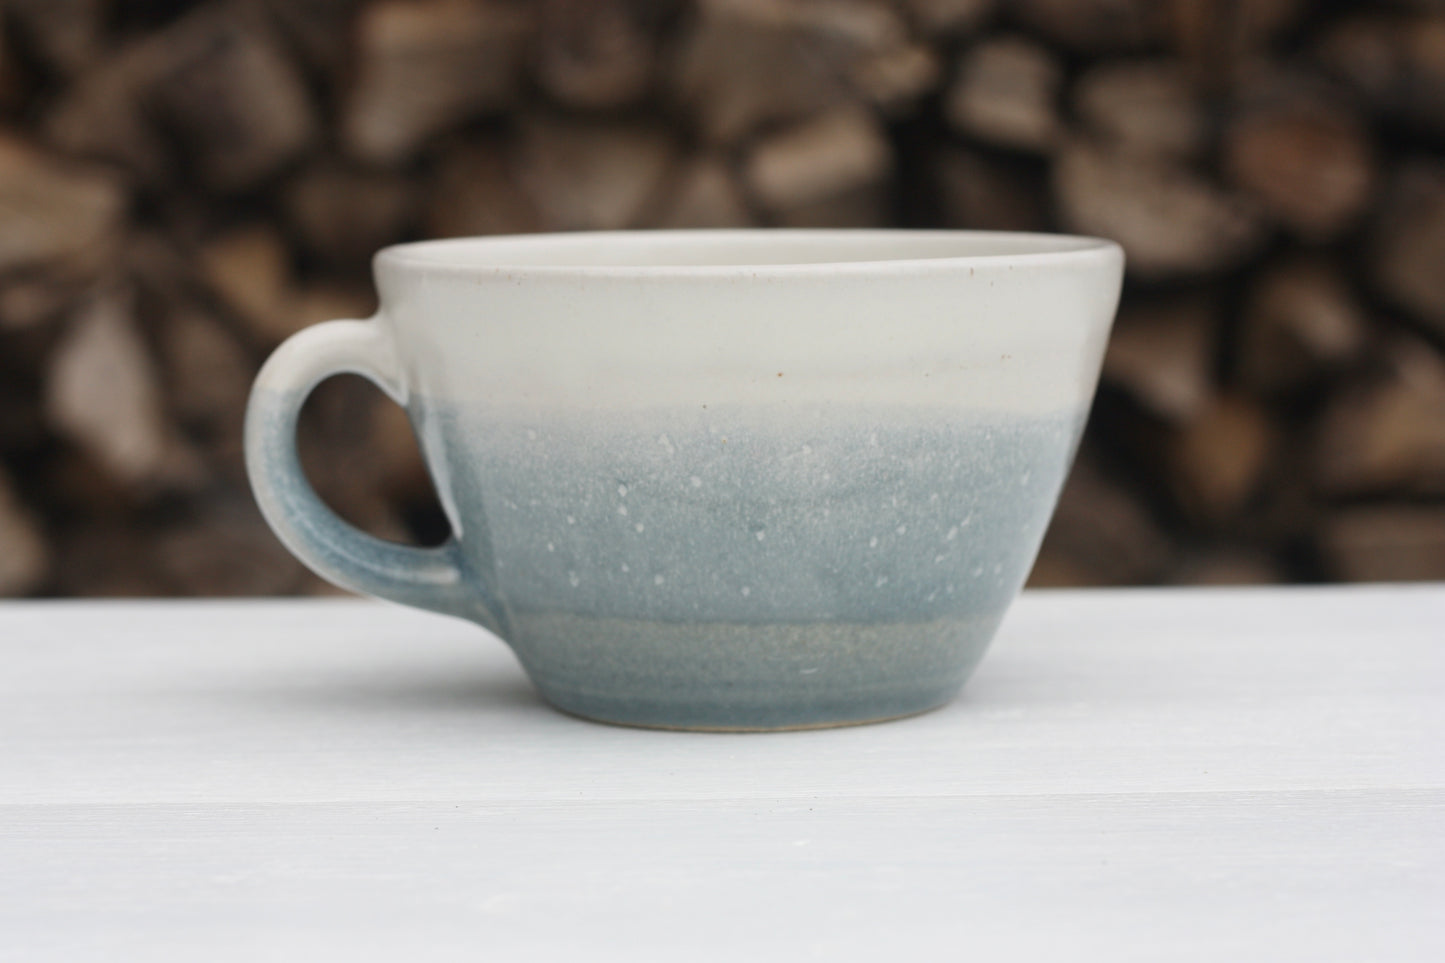 Stormy Day glazed Mug 14oz 400ml Large Mug in Blue and White Glaze